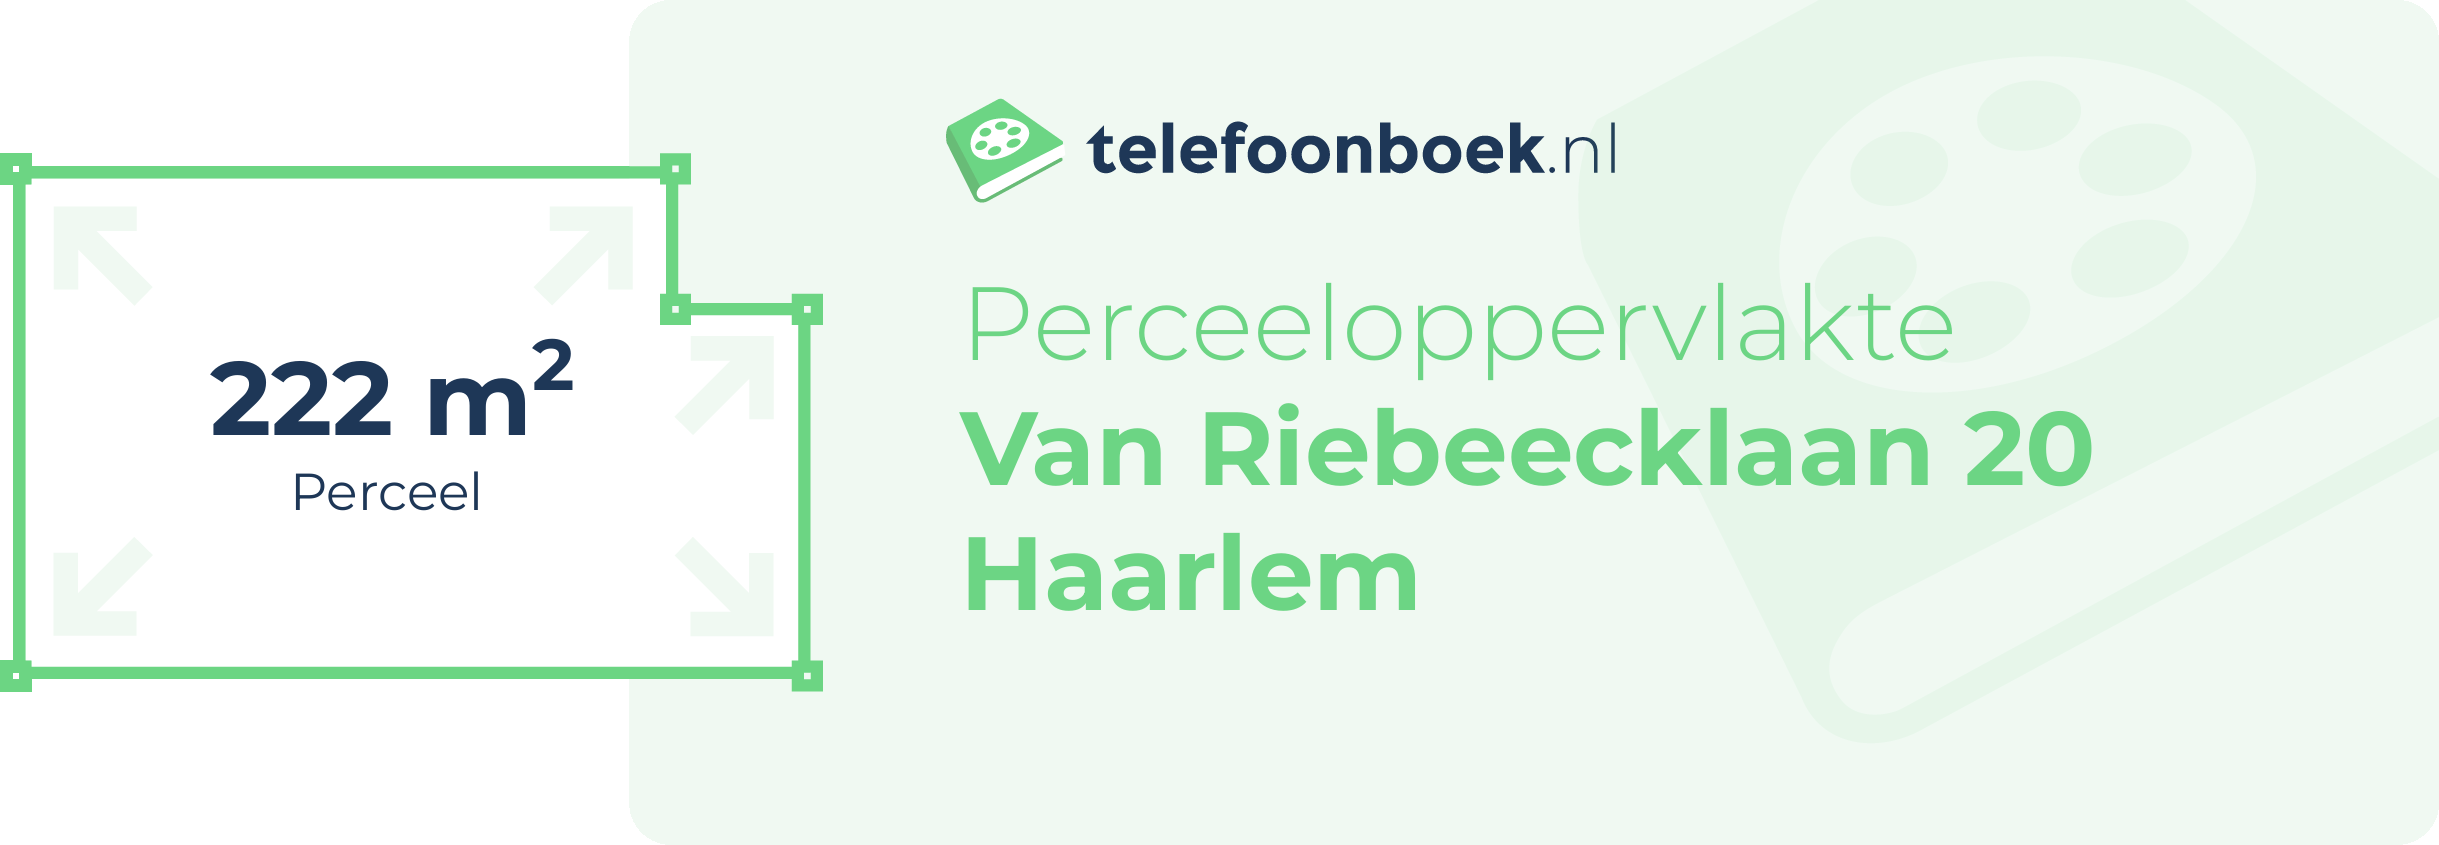 Perceeloppervlakte Van Riebeecklaan 20 Haarlem